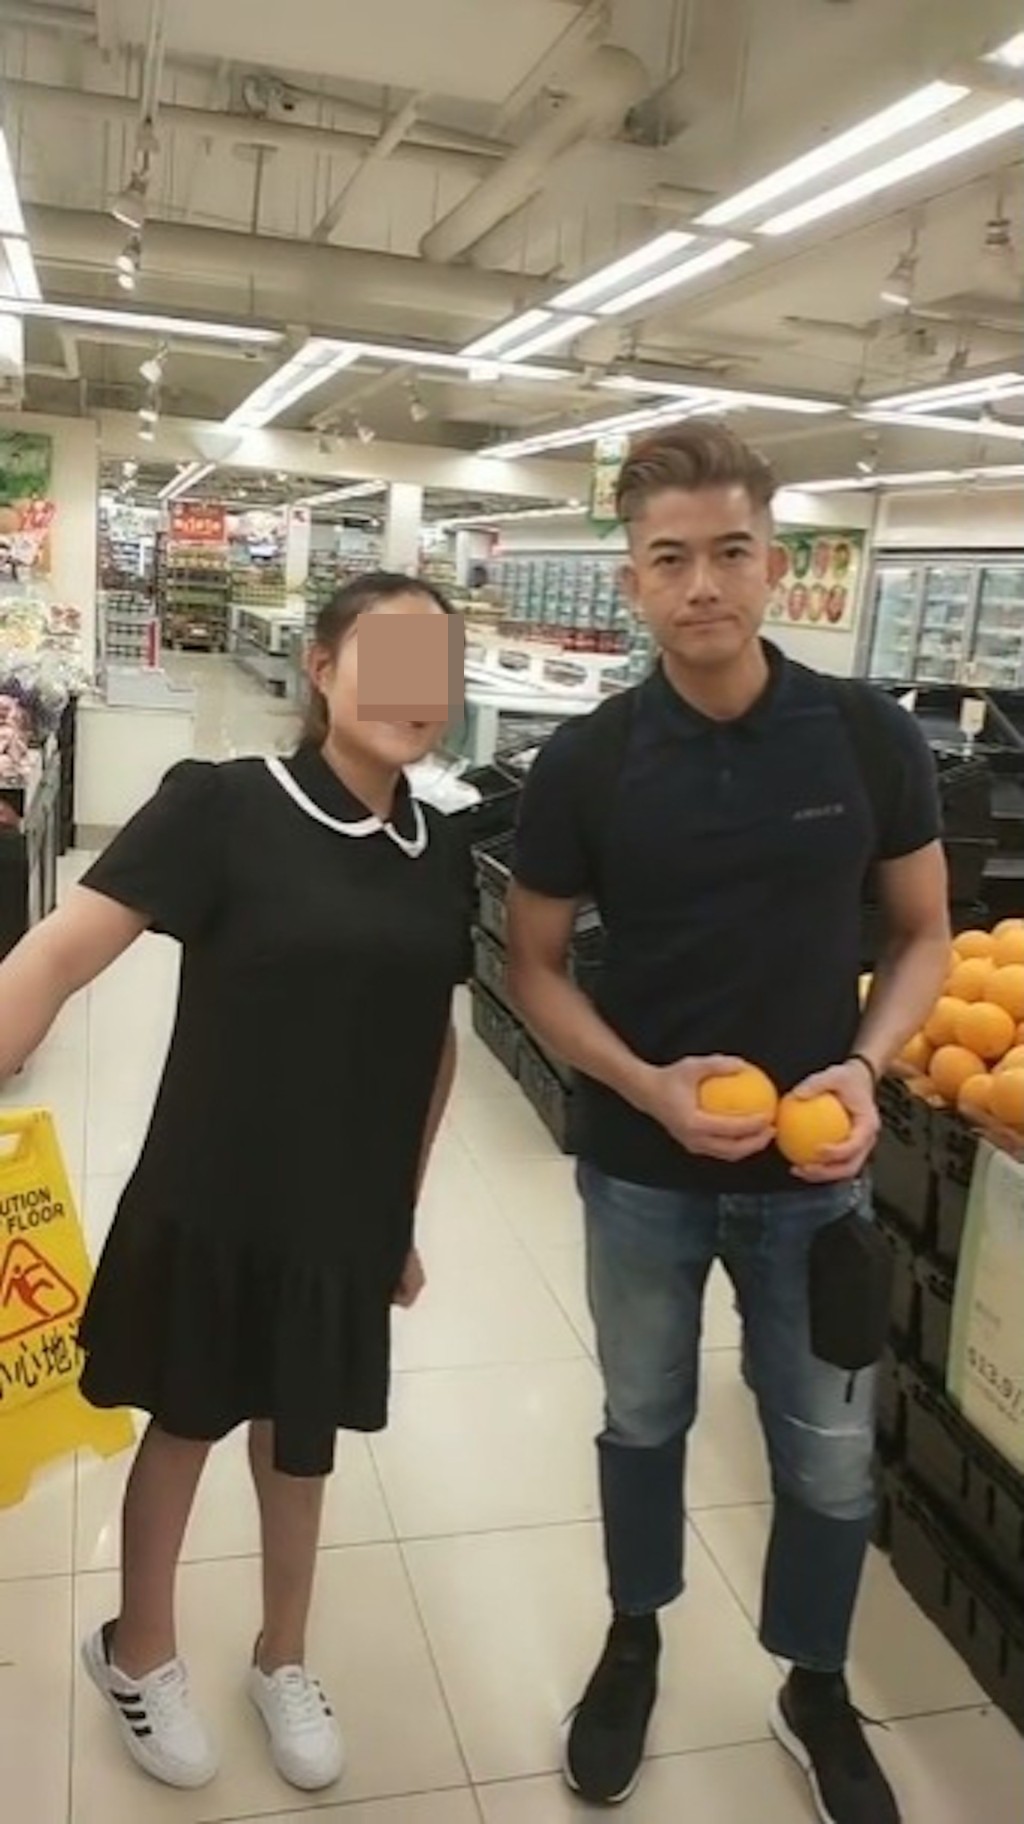 昨日有网民分享在内地超市野生捕获郭富城的影片。